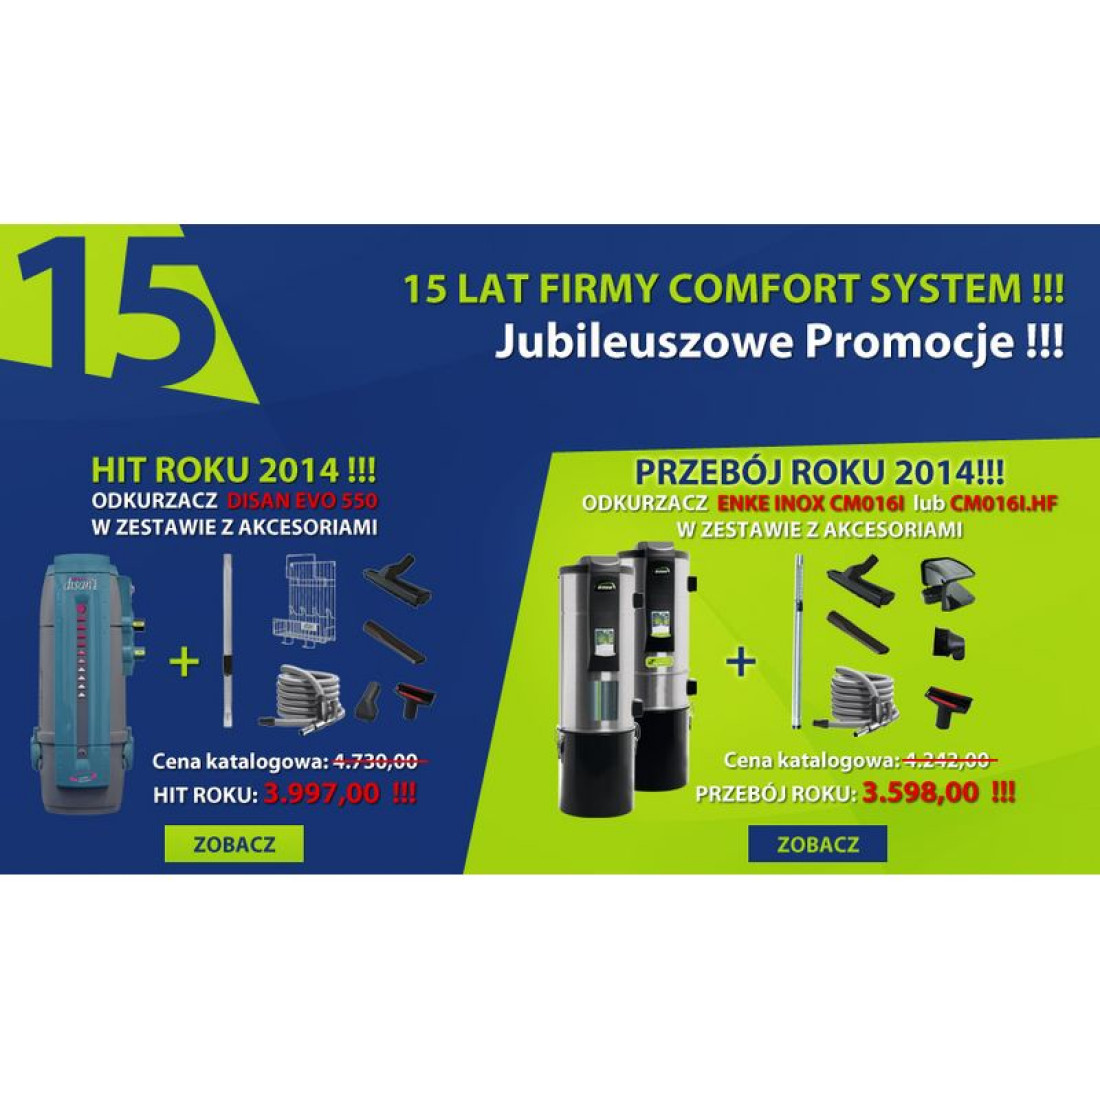 Jubileuszowe promocje z okazji 15 lat firmy Comfort System